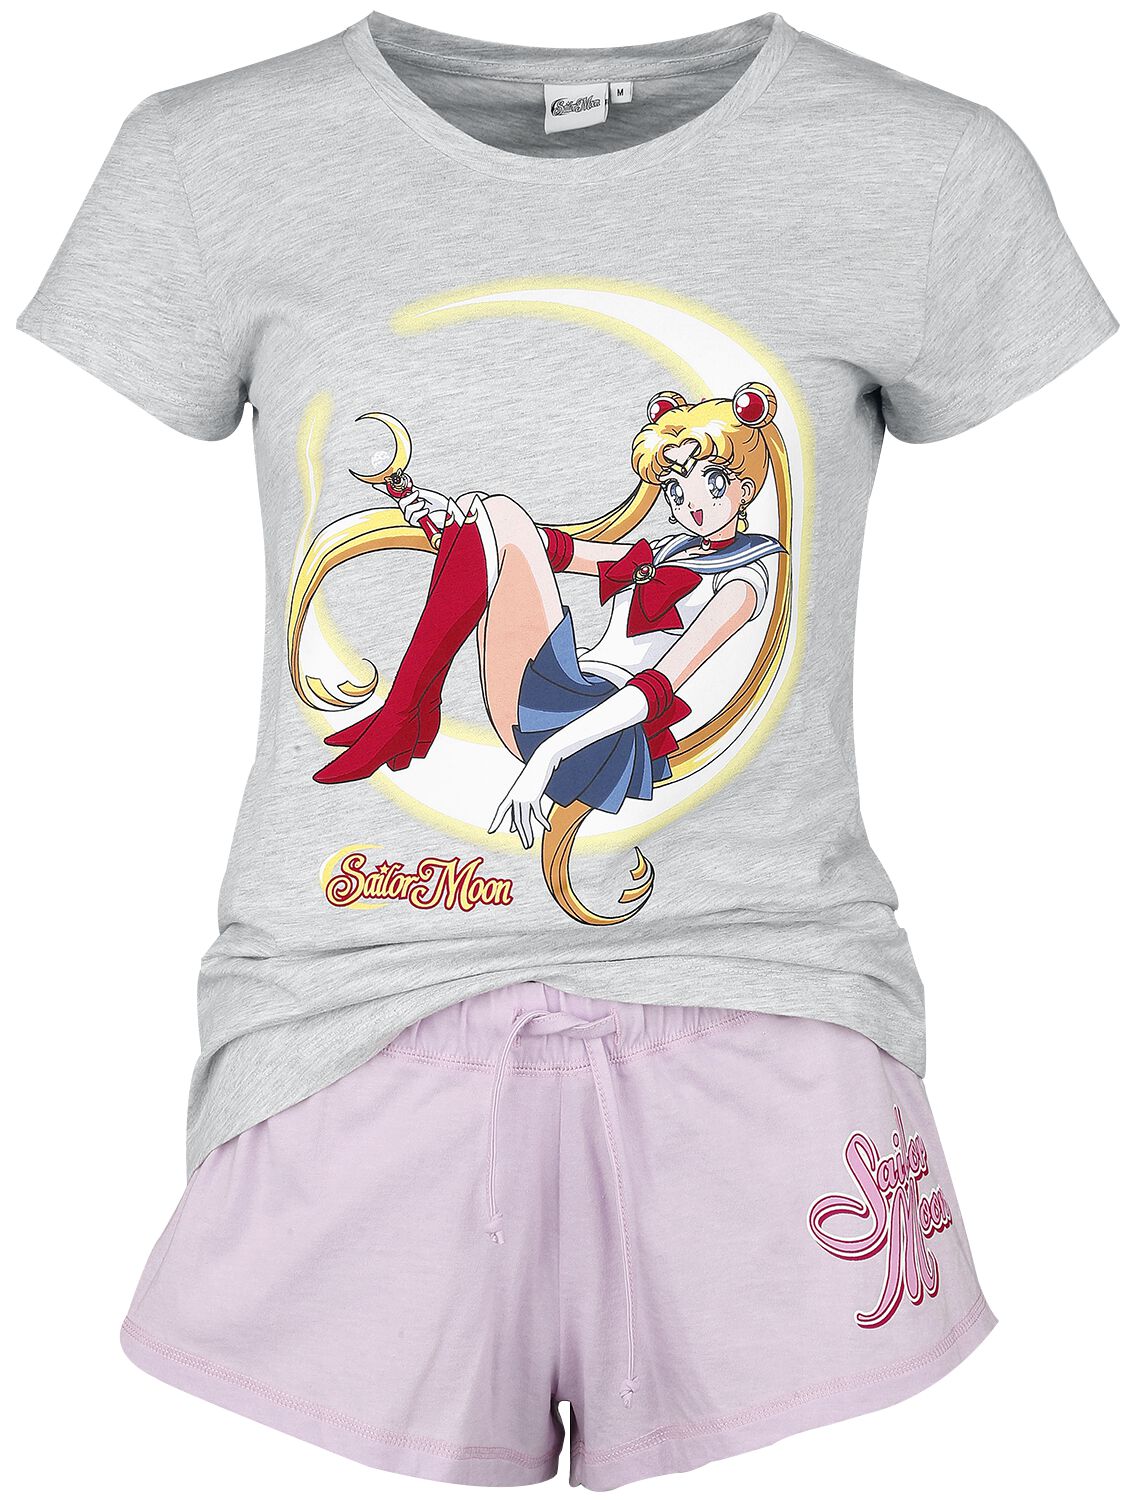 sailor moon - anime schlafanzug - s bis xxl - fÃ¼r damen - grÃ¶ÃŸe xxl - - emp exklusives merchandise! multicolor donna